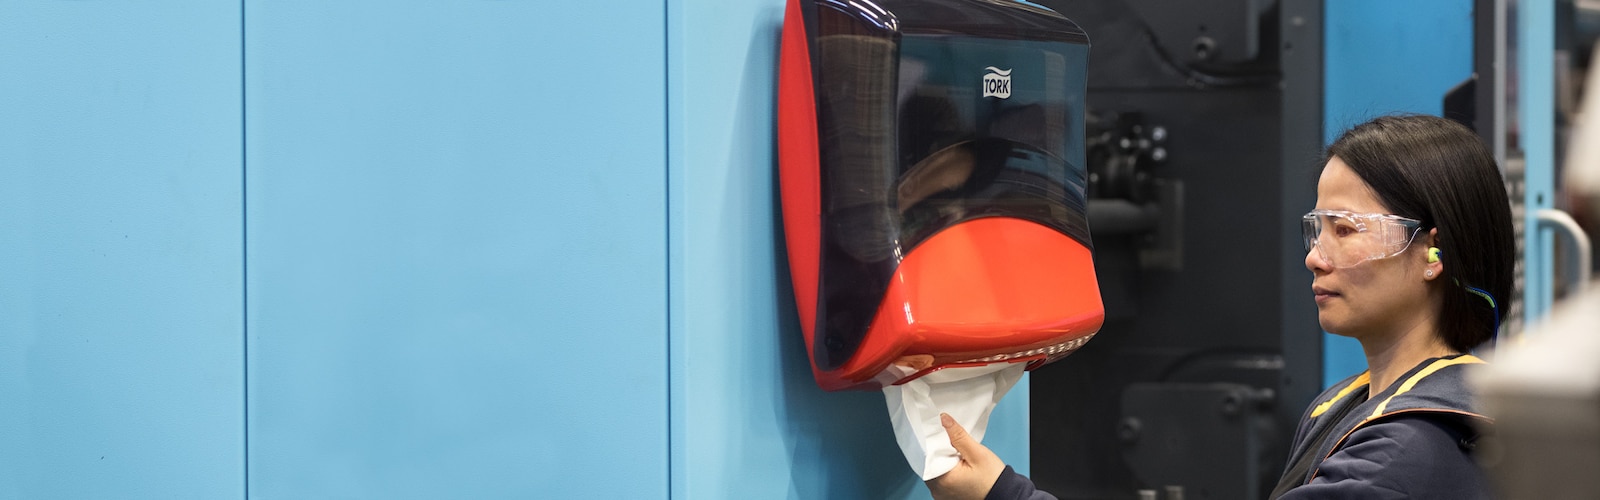 Una donna estrae un opuscolo da un dispenser in un capannone industriale